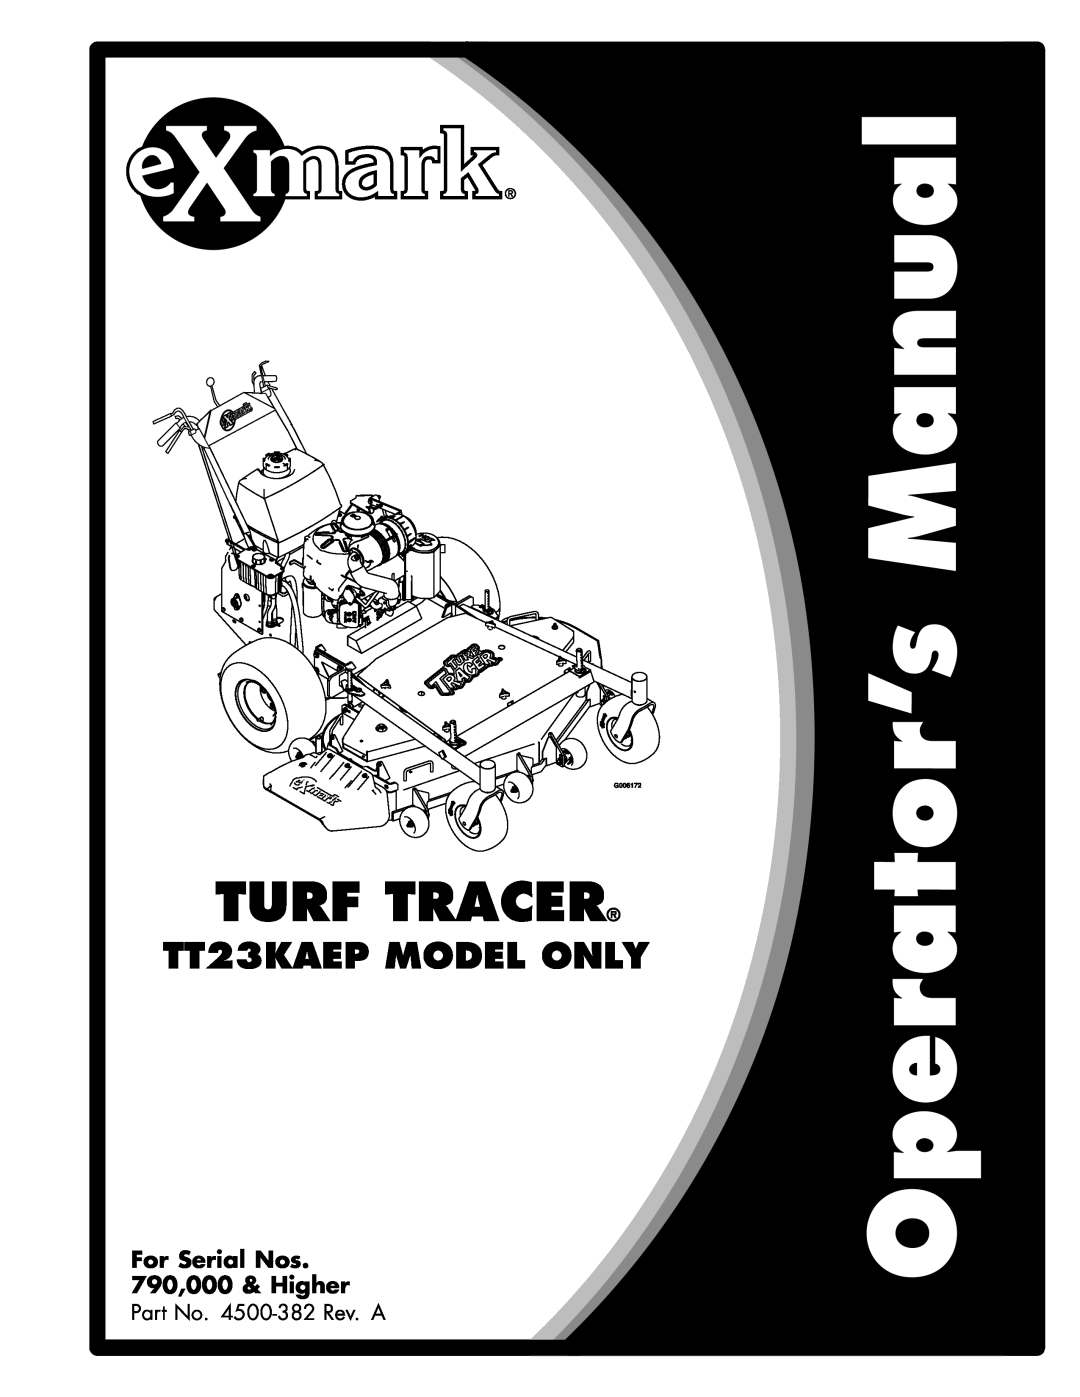 Exmark manual Turf Tracer, TT23KAEP MODEL ONLY, For Serial Nos 790,000 & Higher 